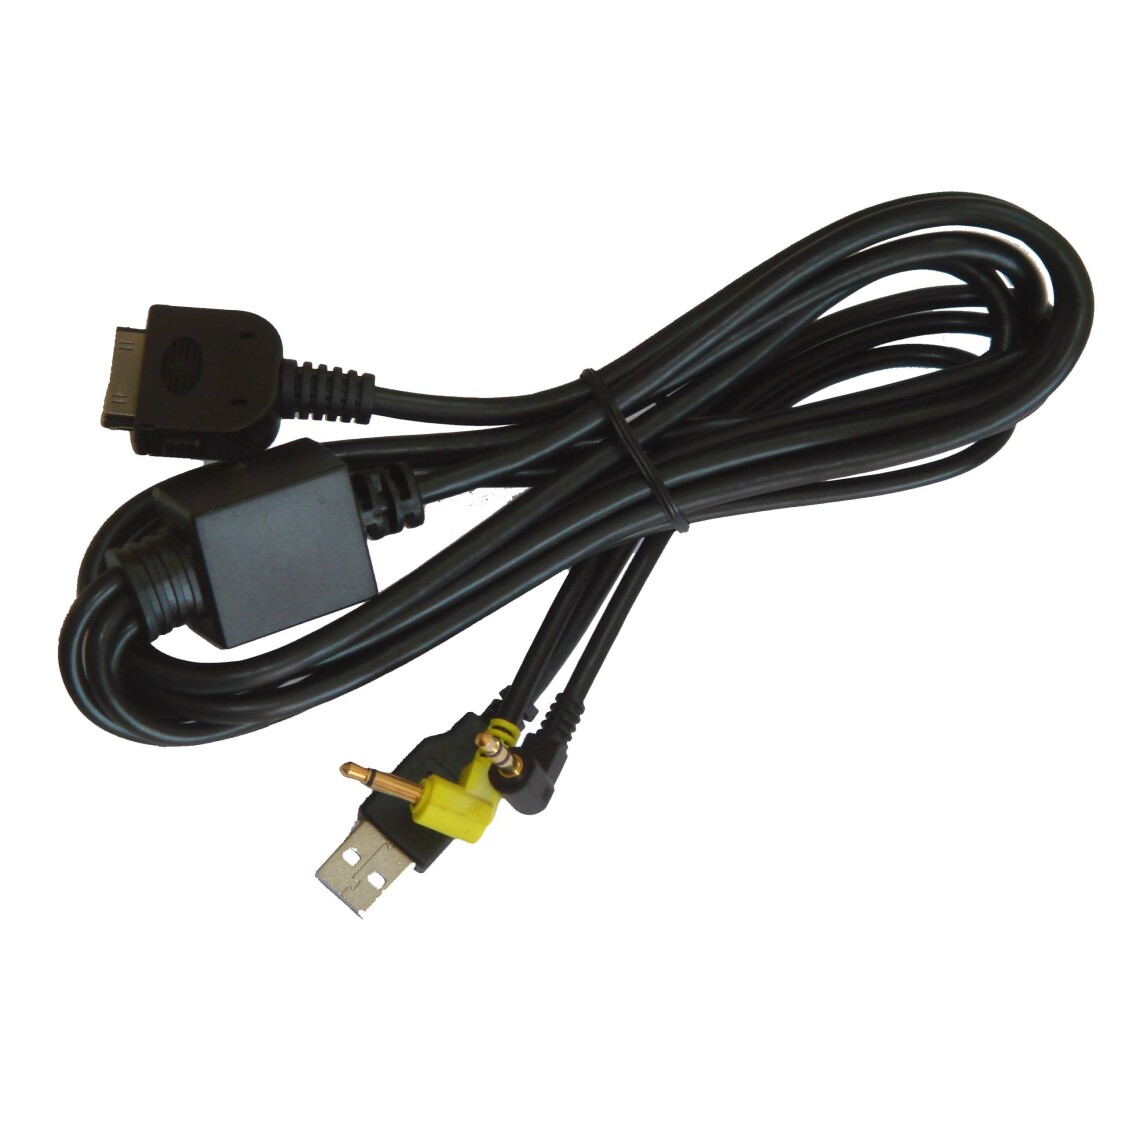 Vhbw - vhbw Câble adaptateur de ligne AUX Radio compatible avec Kenwood KVT-512, KVT-522DVD, KVT-522DVDY, KVT-524DVD, KVT-532DVD voiture - USB, prise jack - Alimentation modulaire